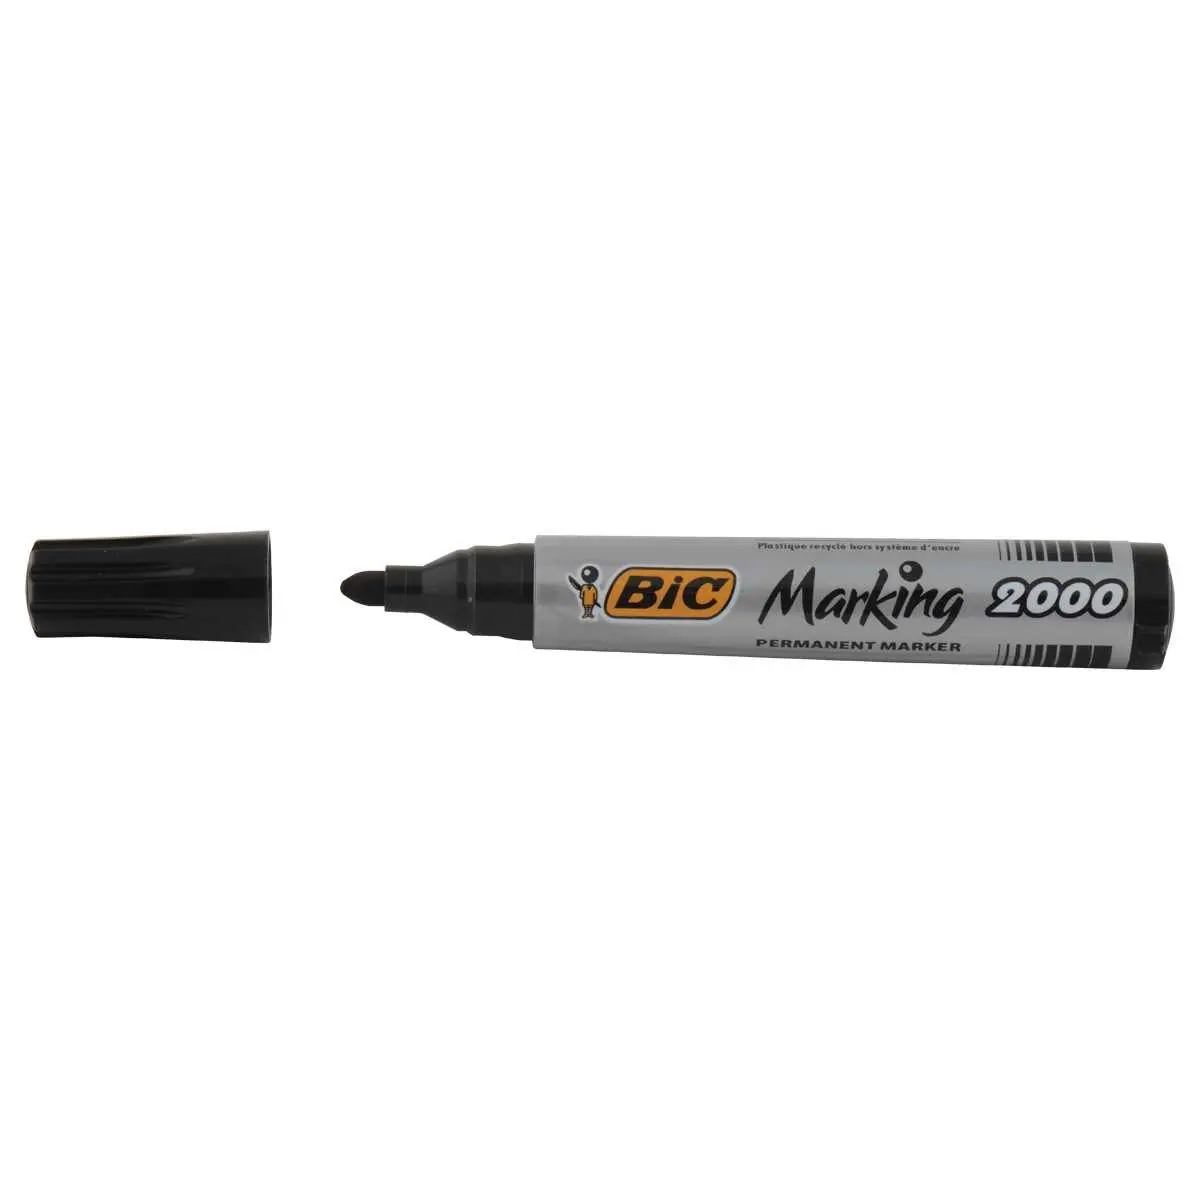 Marqueur permanent Marking 2000 de BIC - pointe ogive - Noir photo du produit